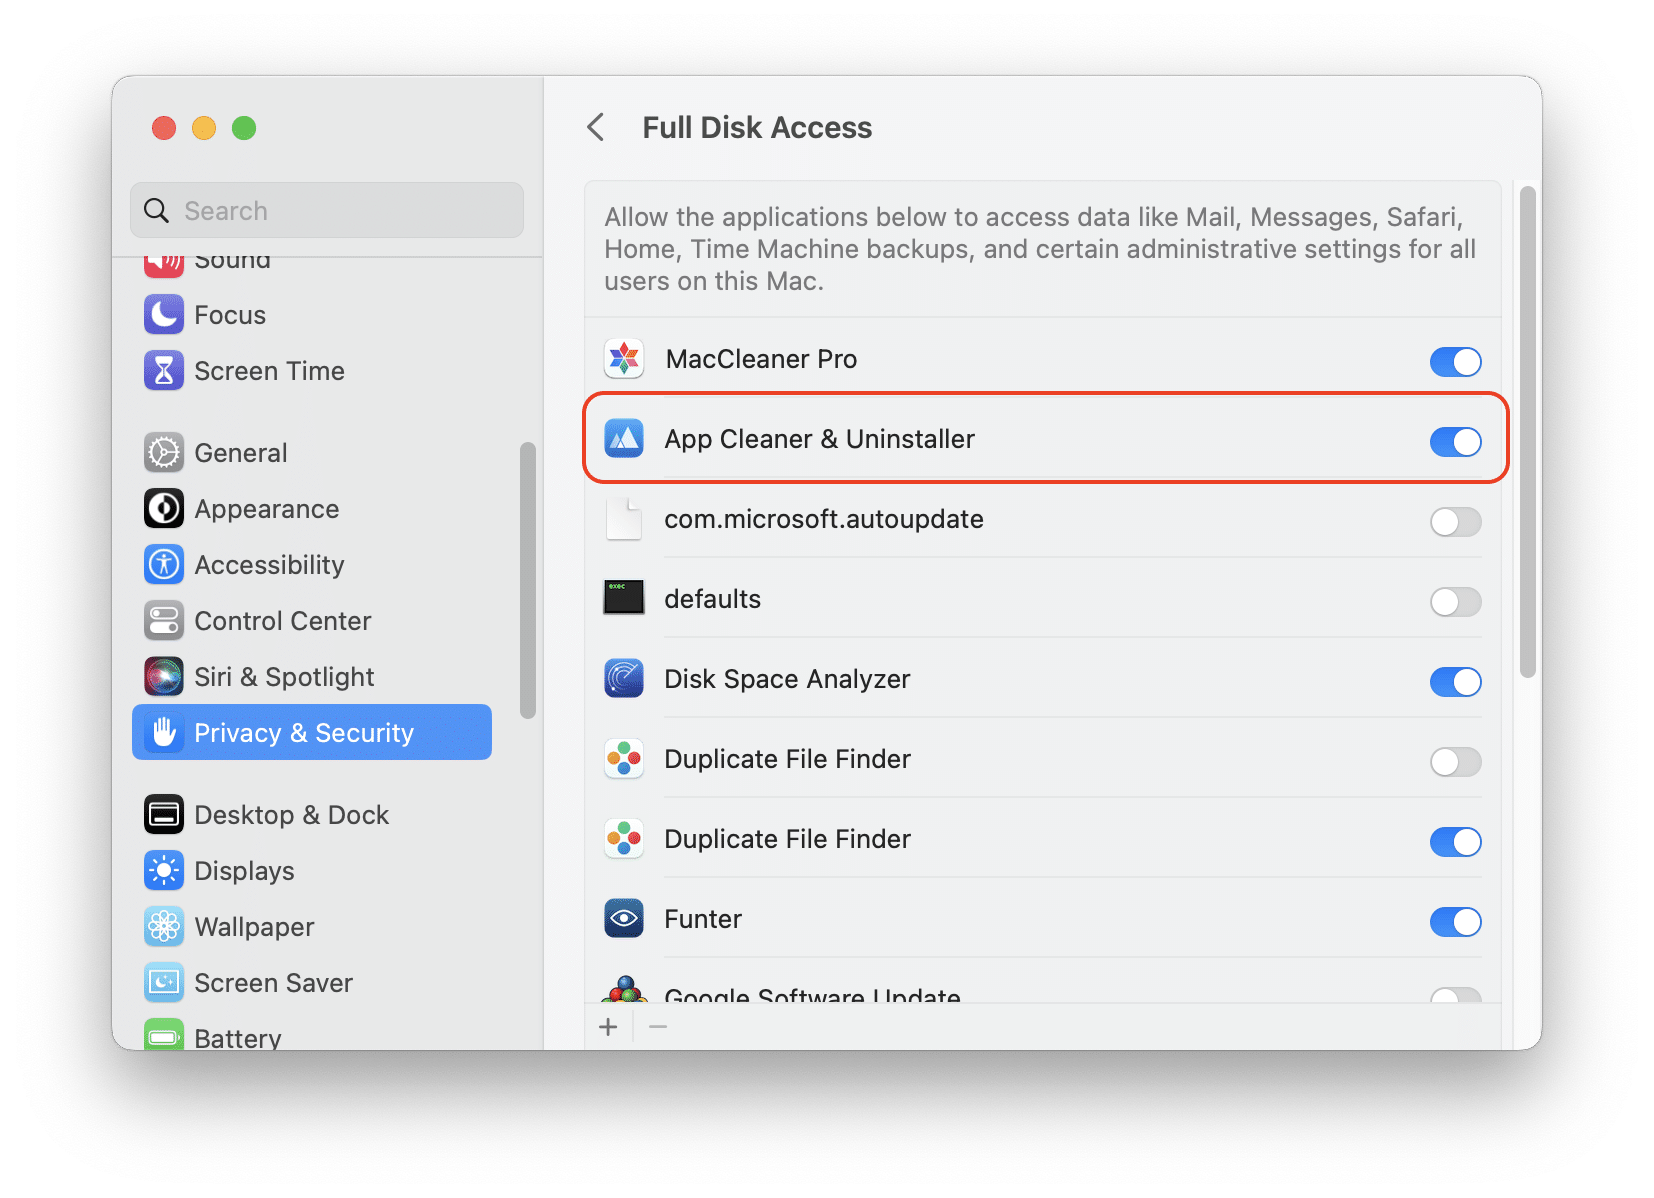 Full Disk Access settings